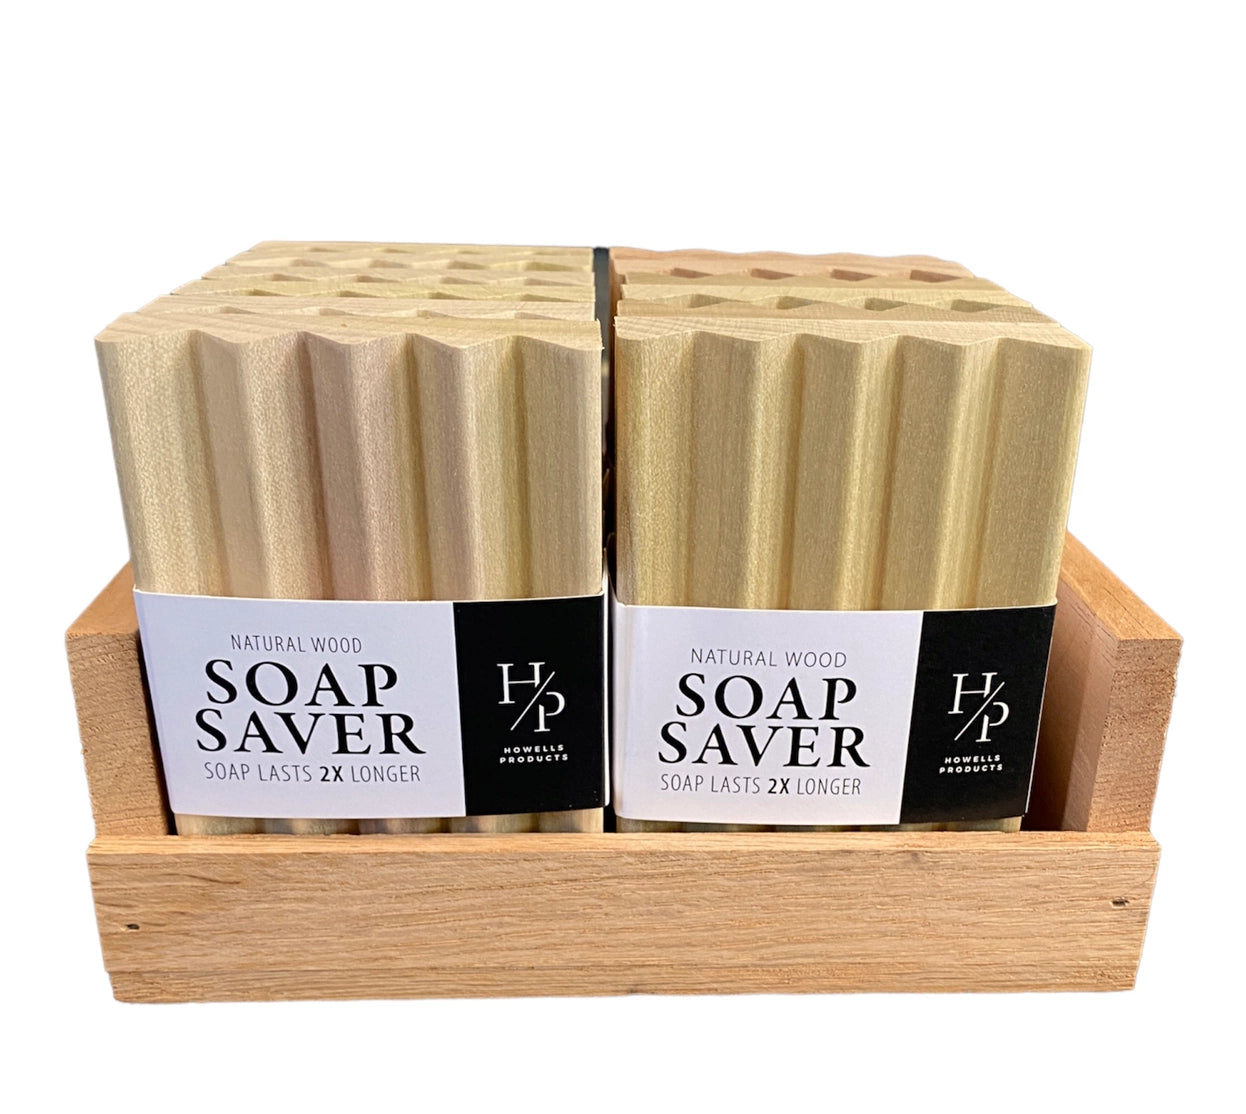 Natural Wood Soap Saver